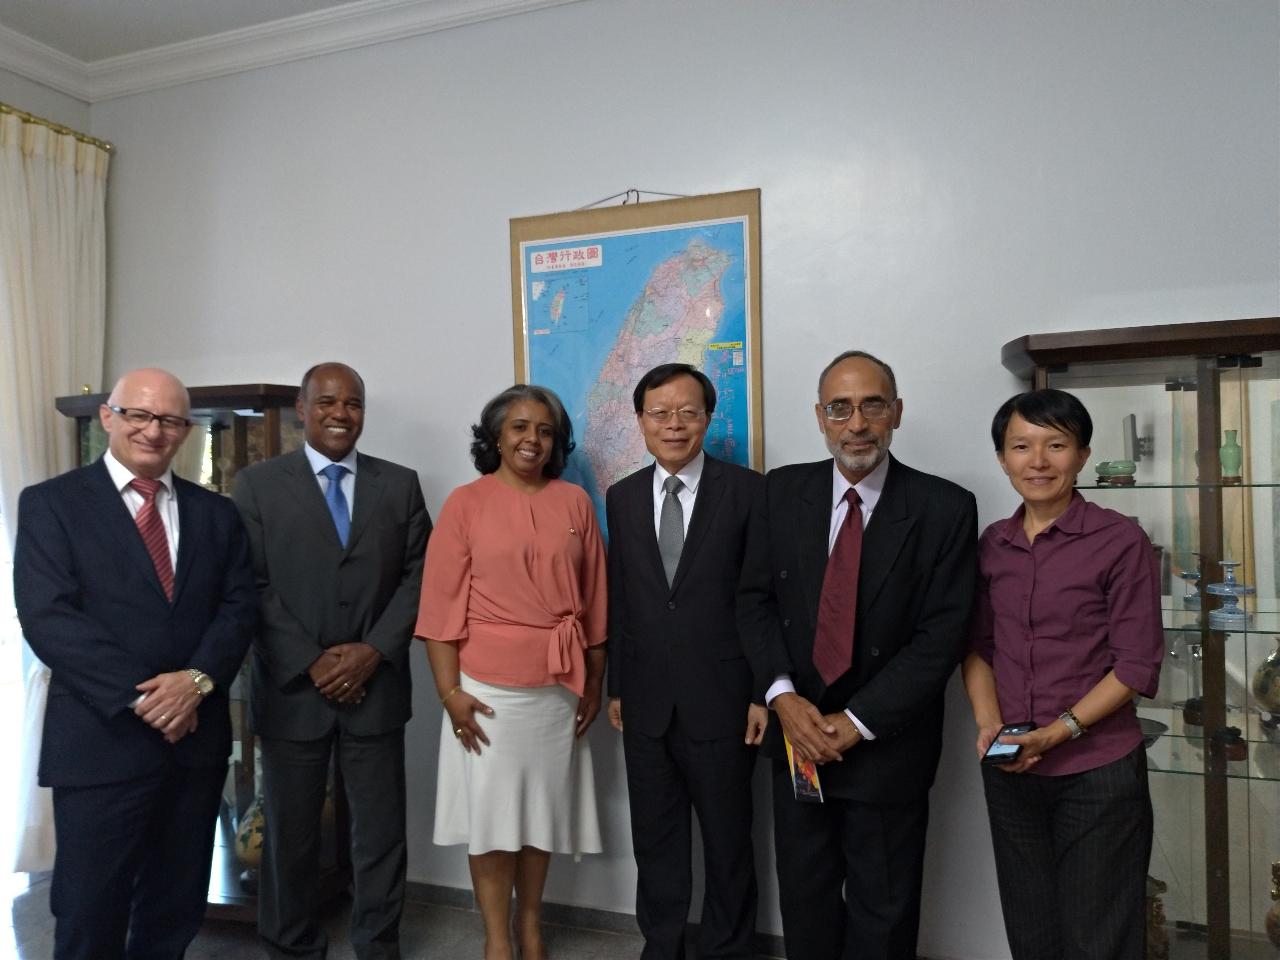 Os membros da OAB/DF representados pela Dra. Nubia Bragança visitaram o senhor Embaixador Jian-Gueng Her no dia 2 de agosto de 2018.